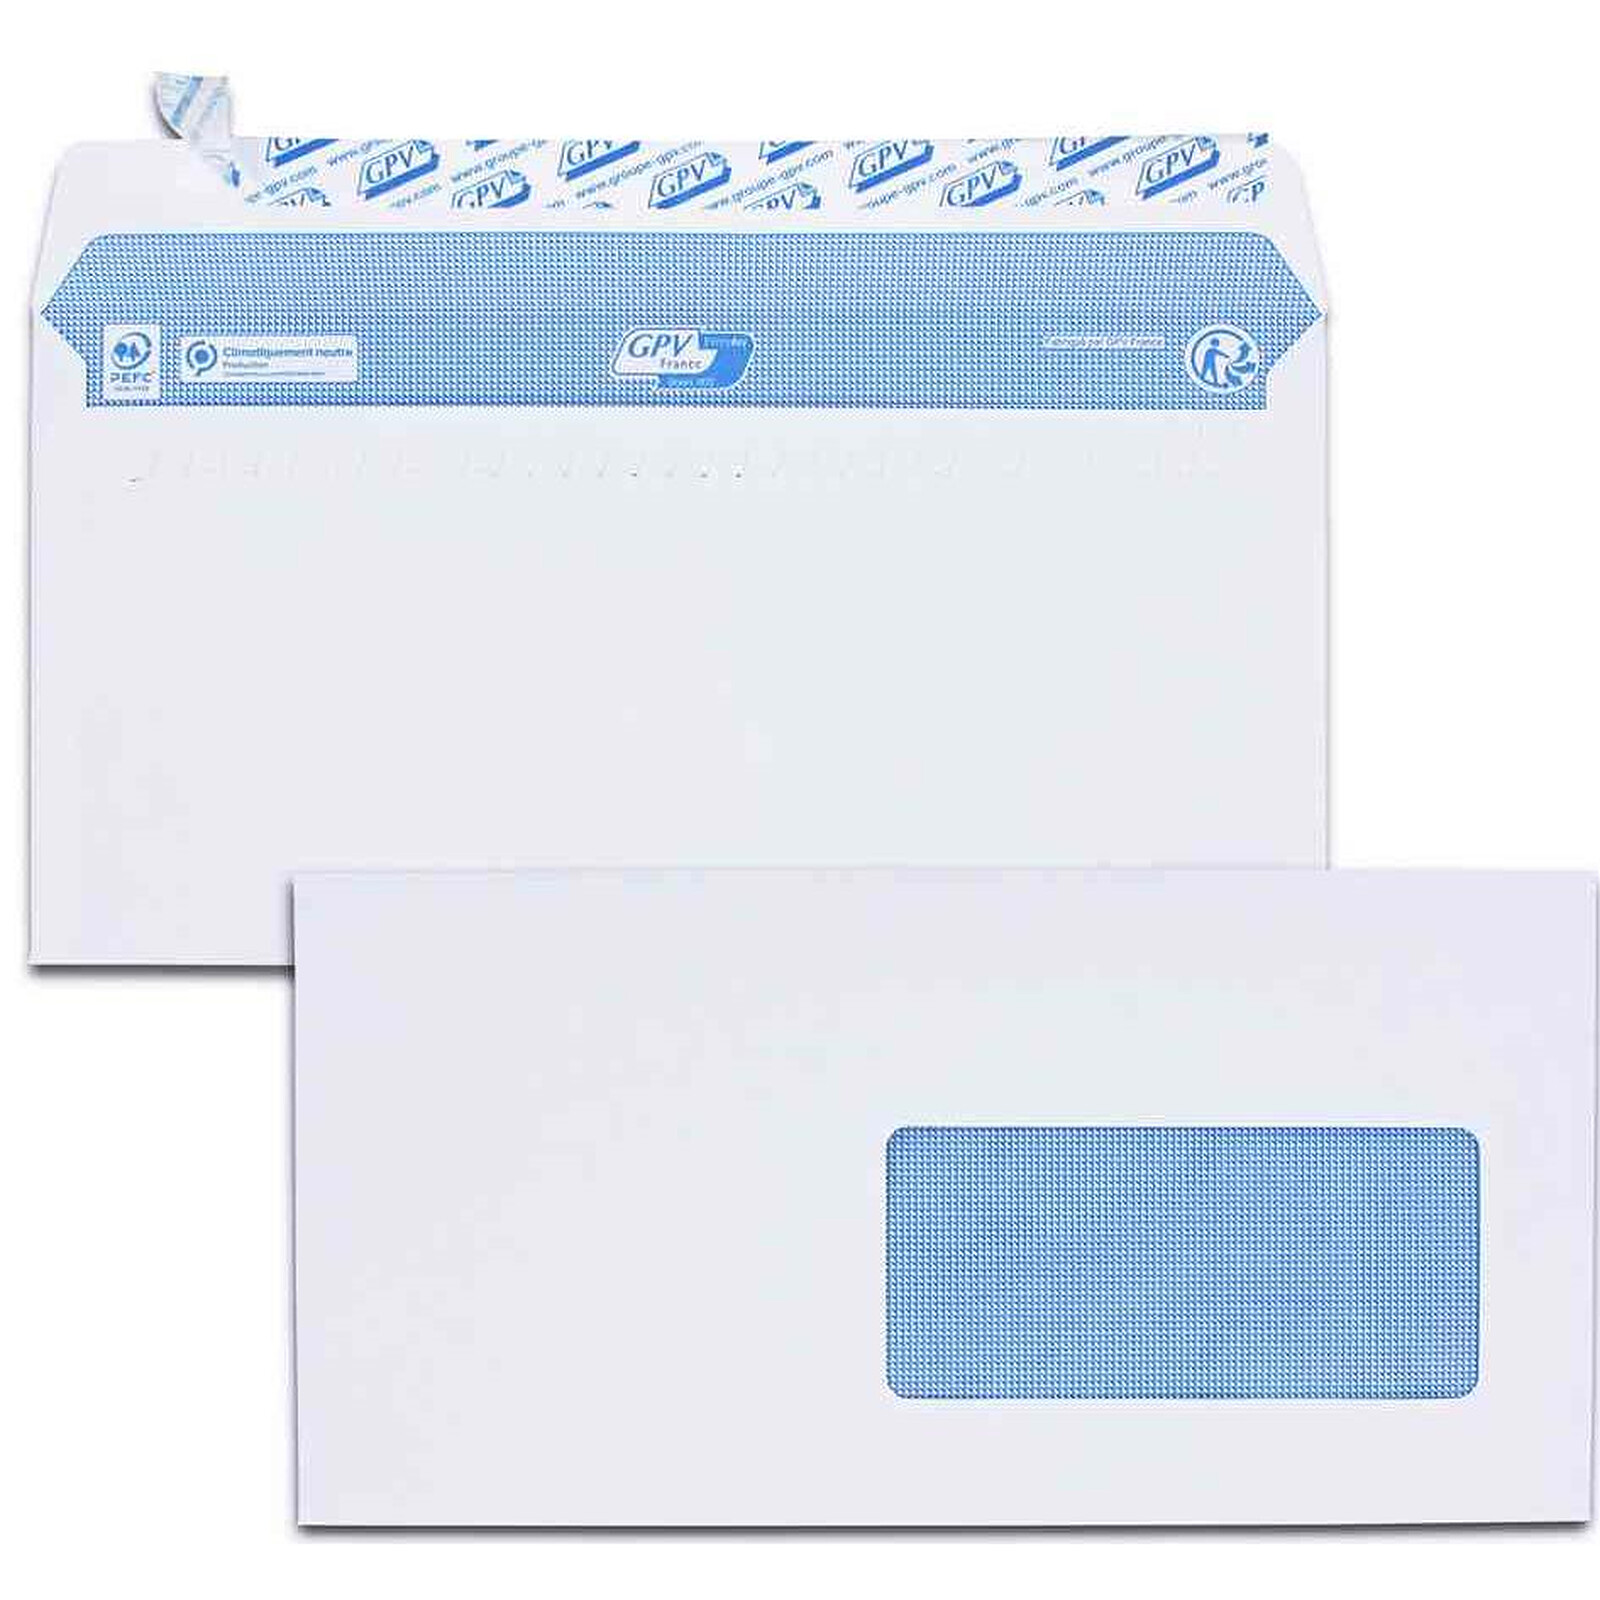 Enveloppe C5 A5 blanche avec fenêtre 162 x 229 mm bande adhésive